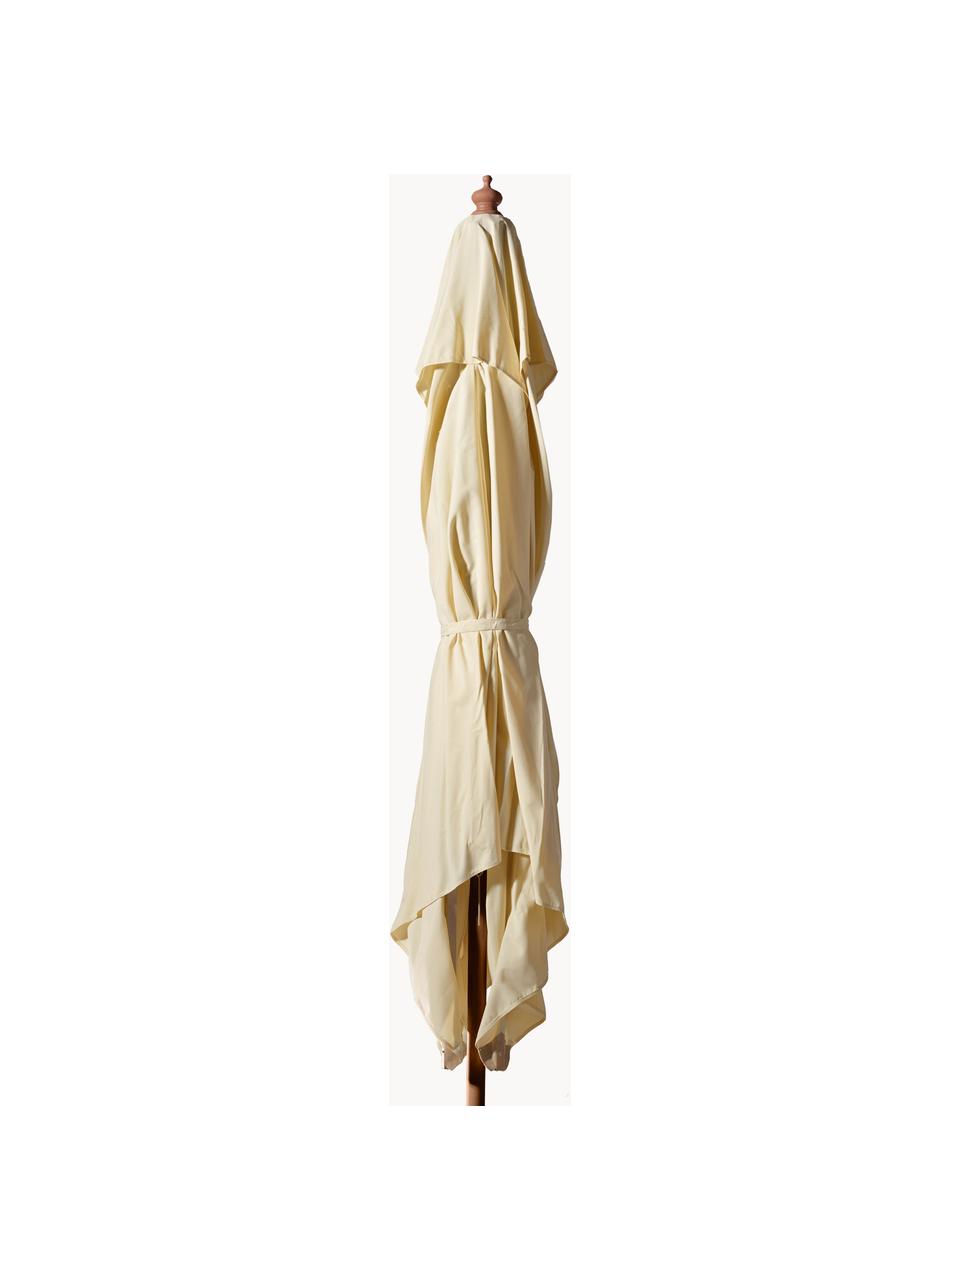 Parasol Alezio, larg. 300 cm, Blanc crème, bois clair, larg. 300 x haut. 275 cm